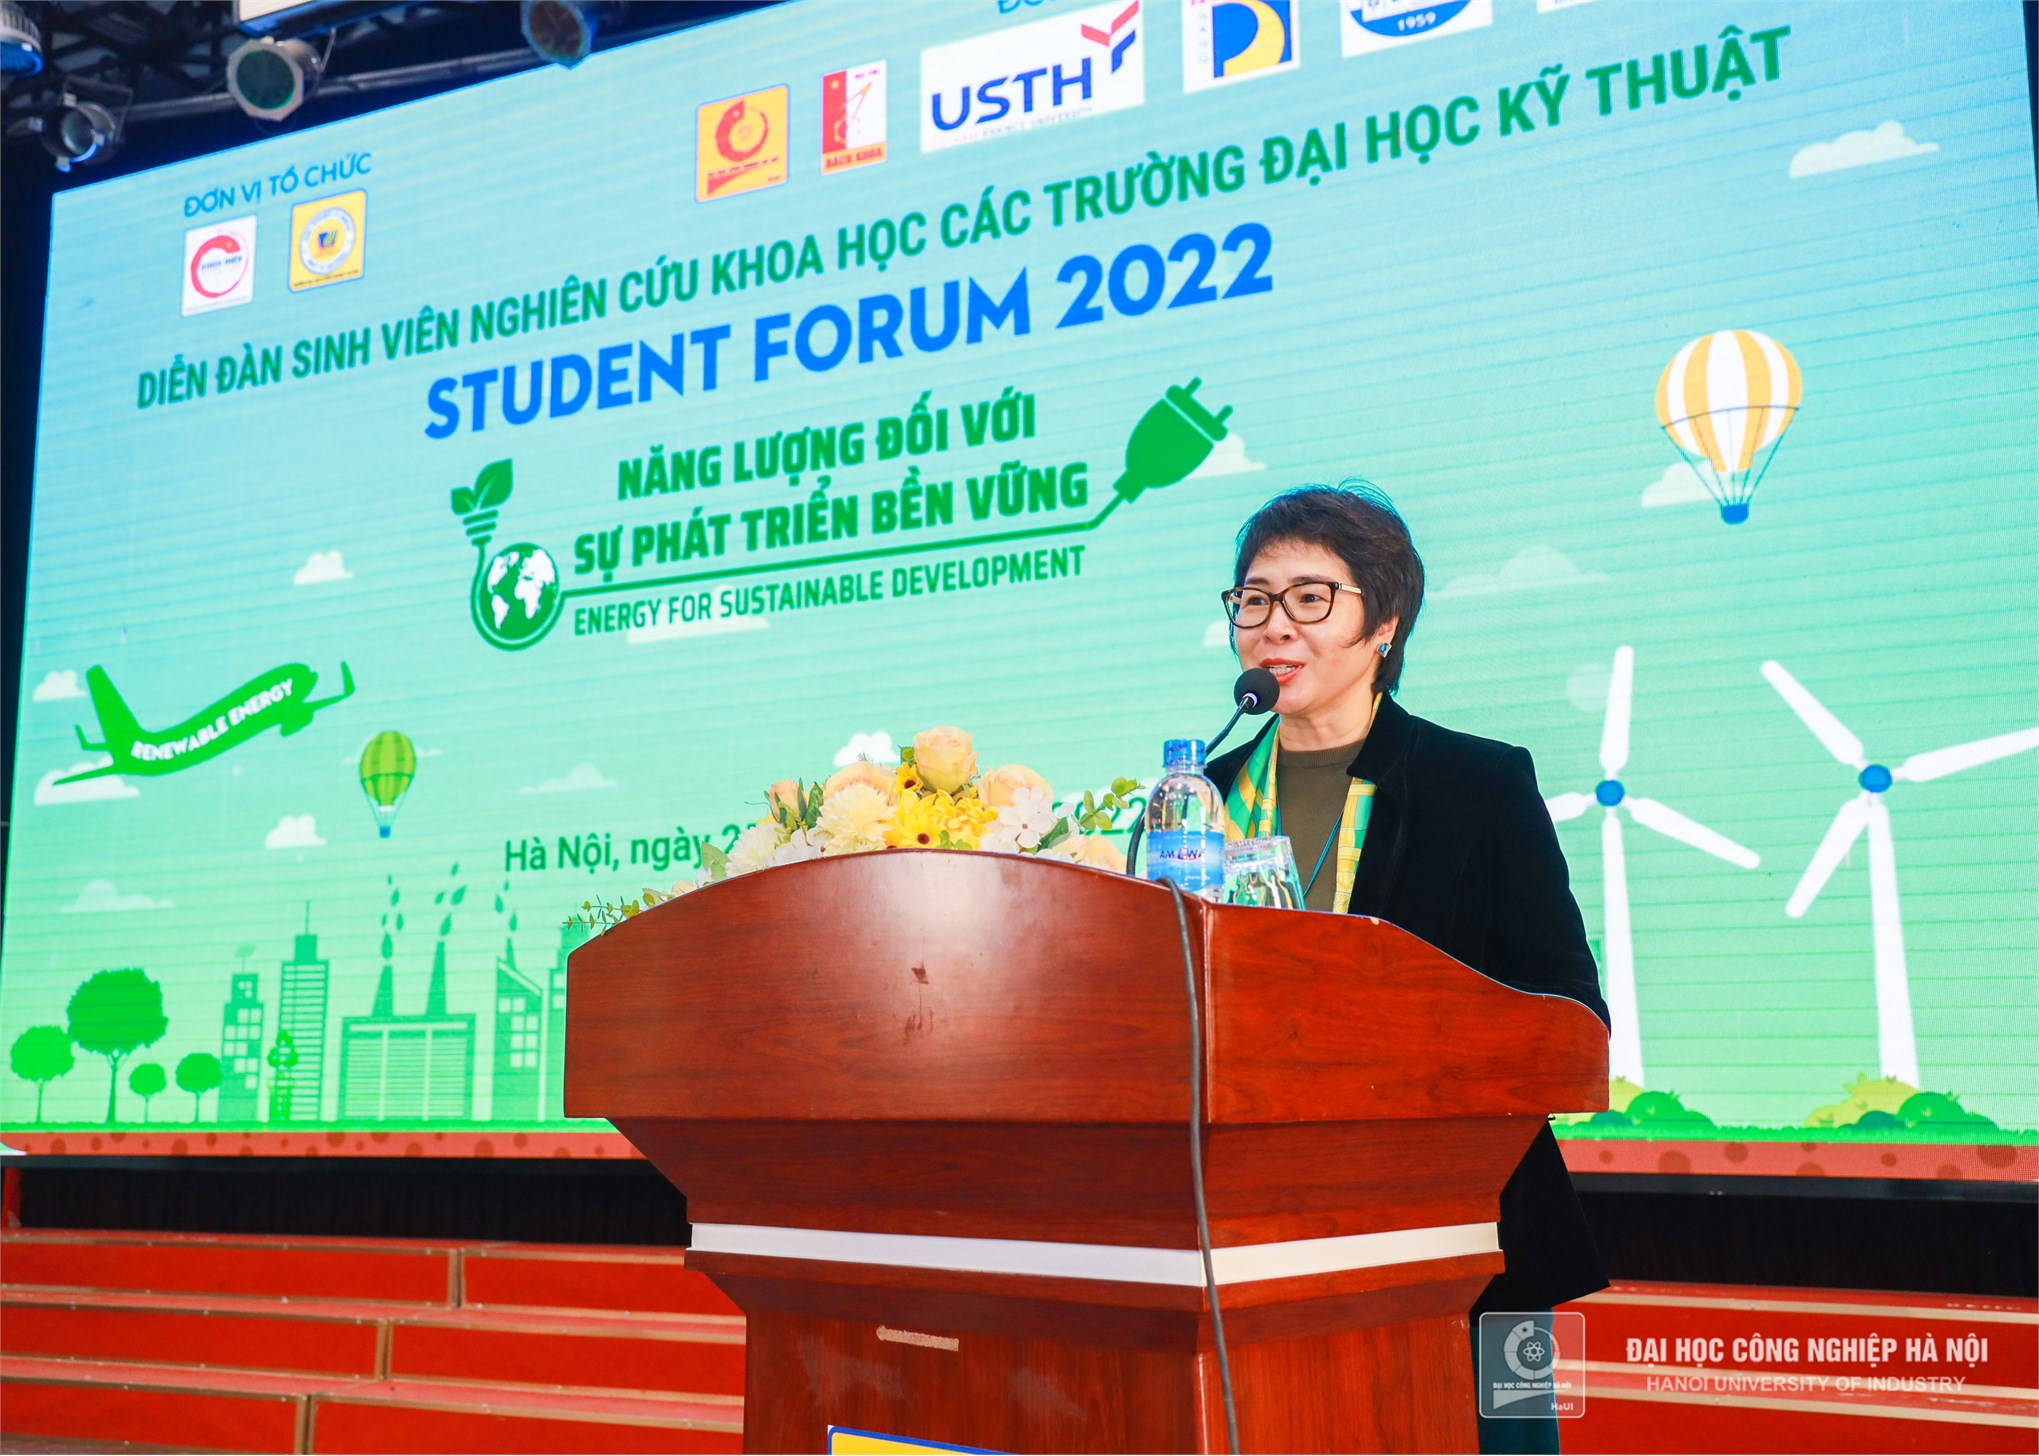 Năng lượng đối với sự phát triển bền vững – Student Foum 2022